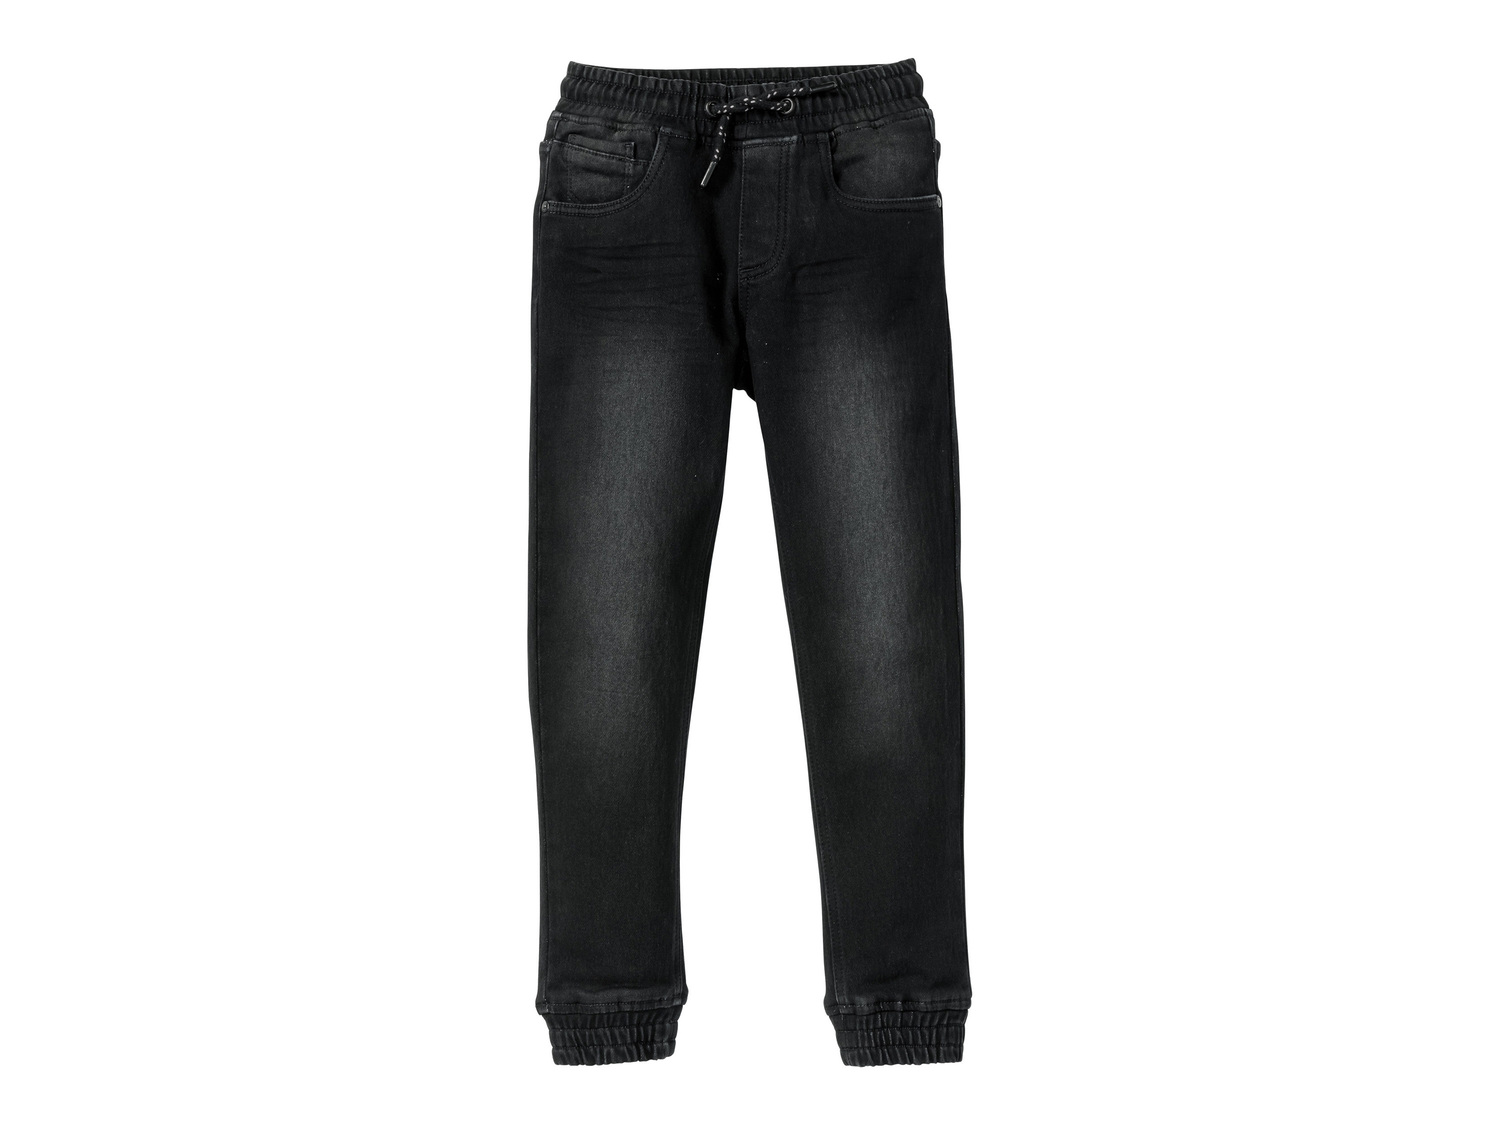 Jeans da bambino Pepperts, prezzo 11.99 &#8364;  
Misure: 6-14 anni